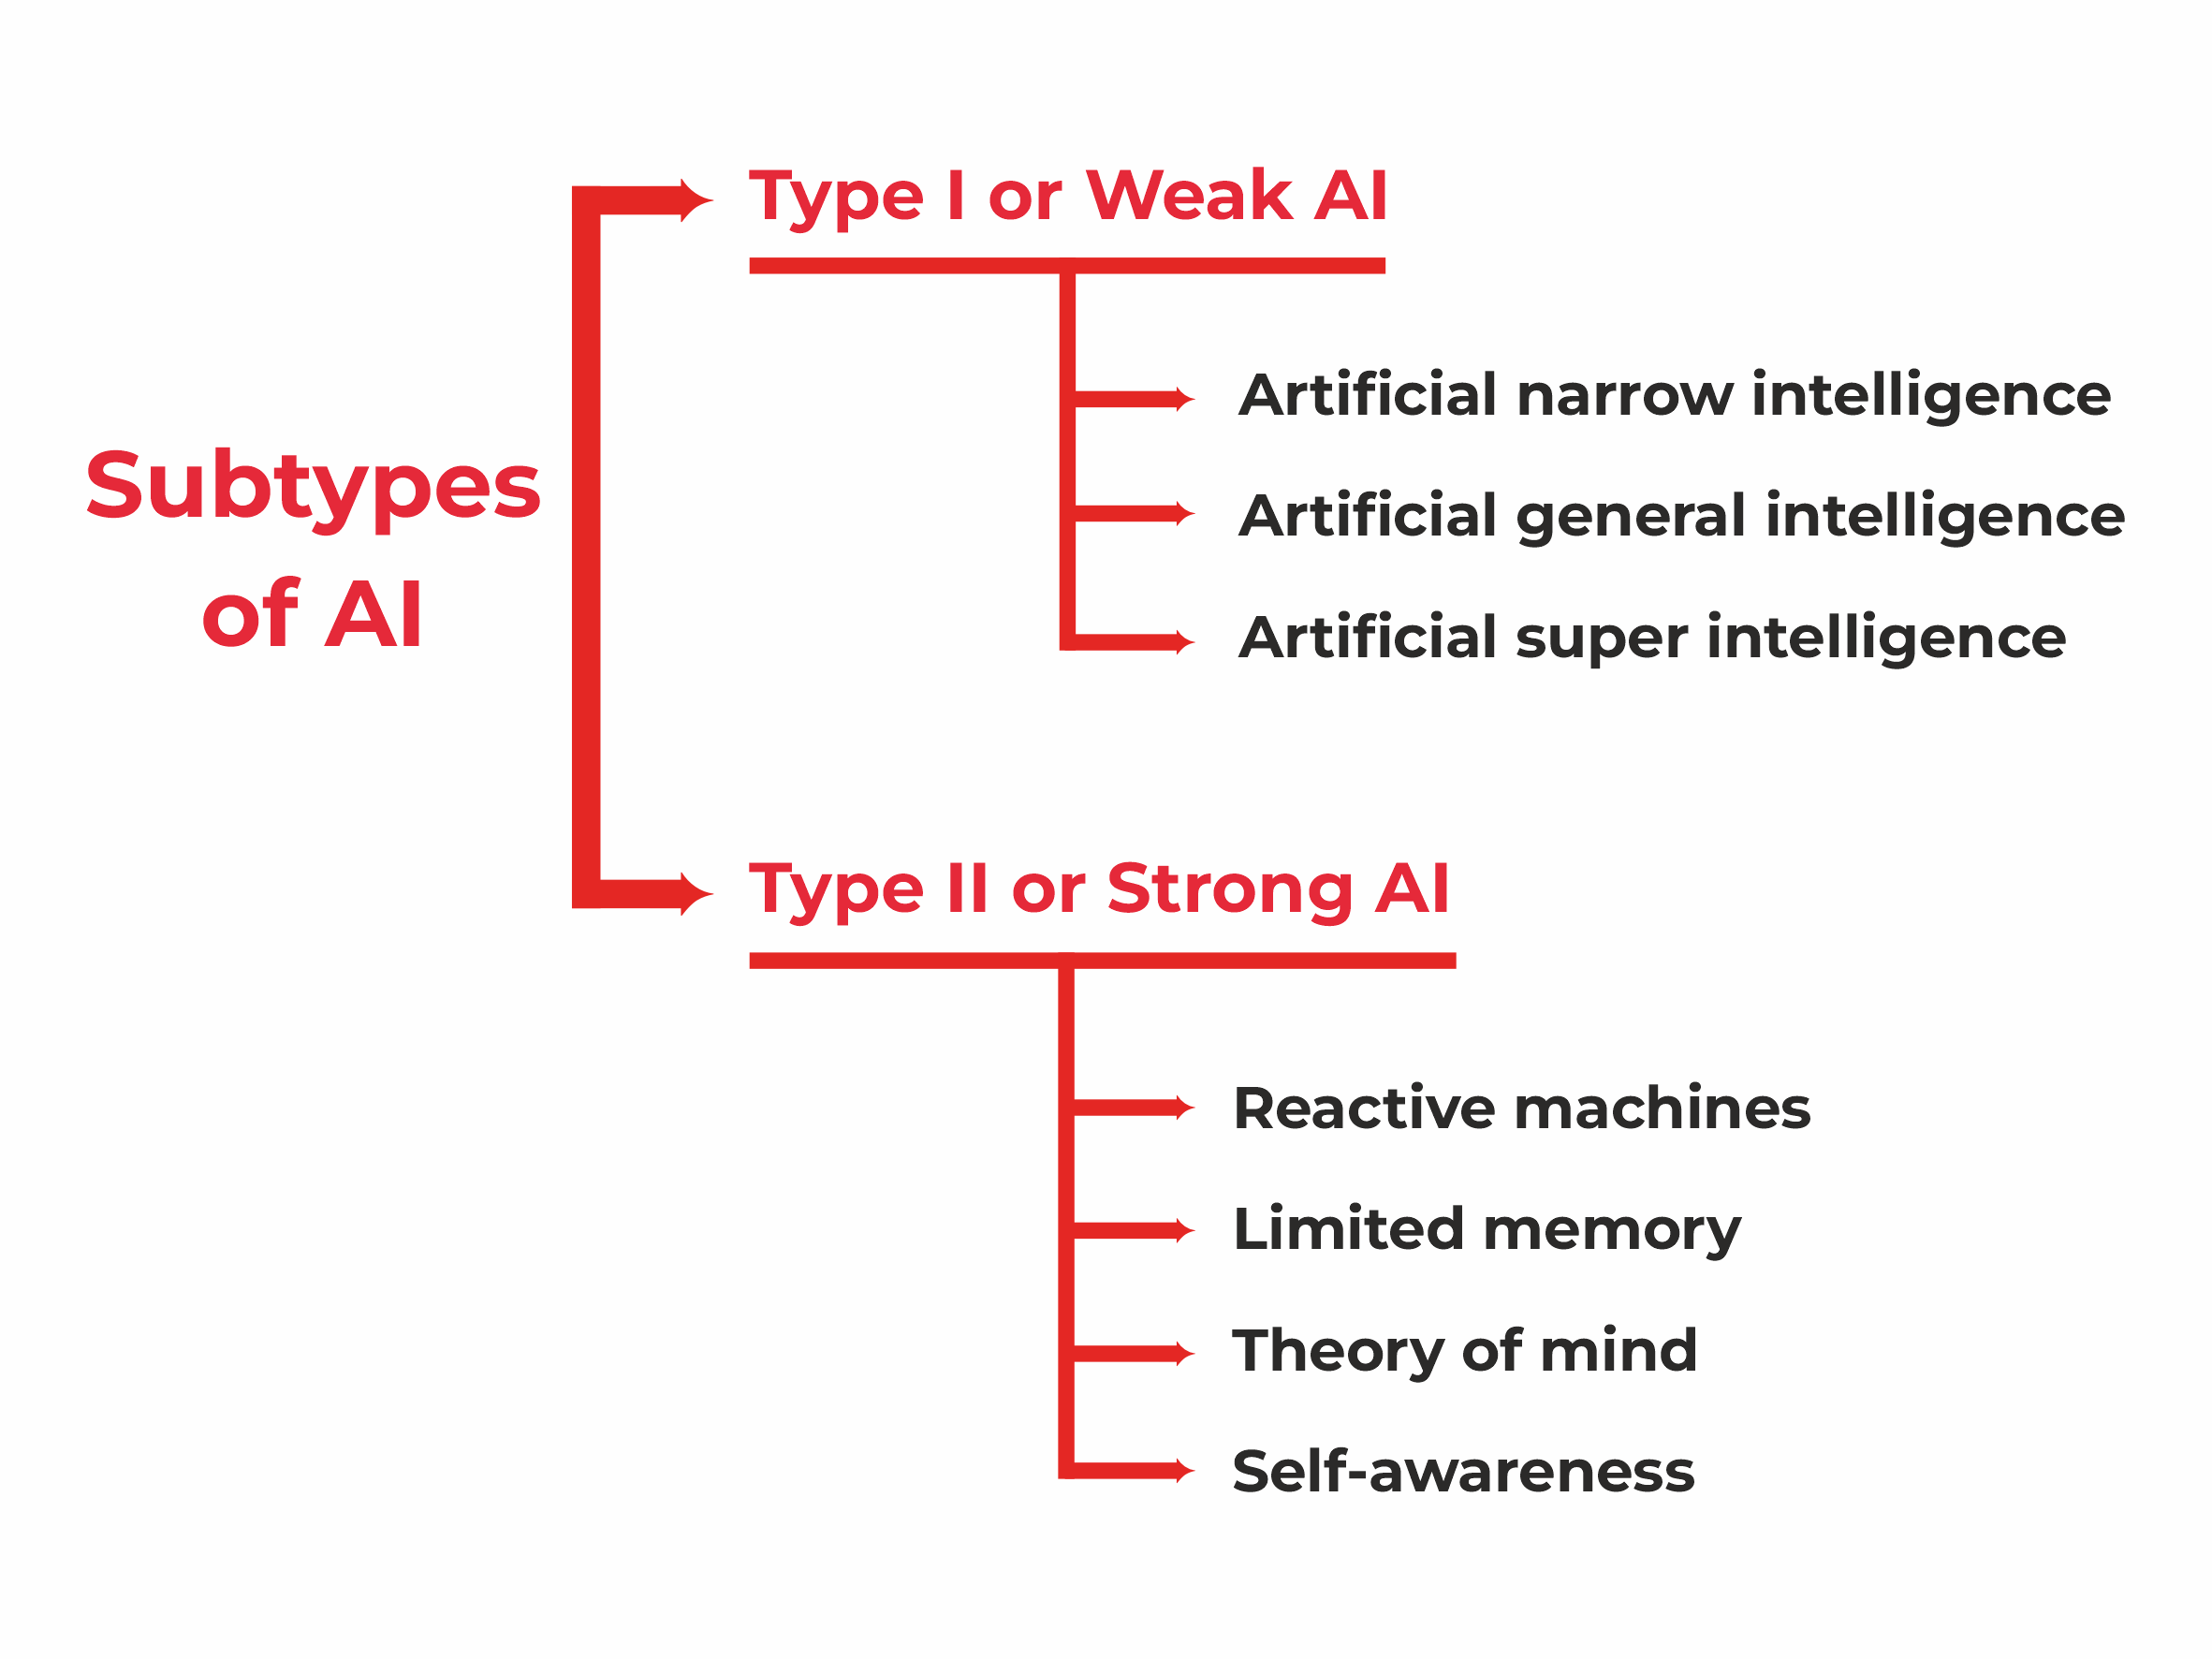 Sub-types of AI